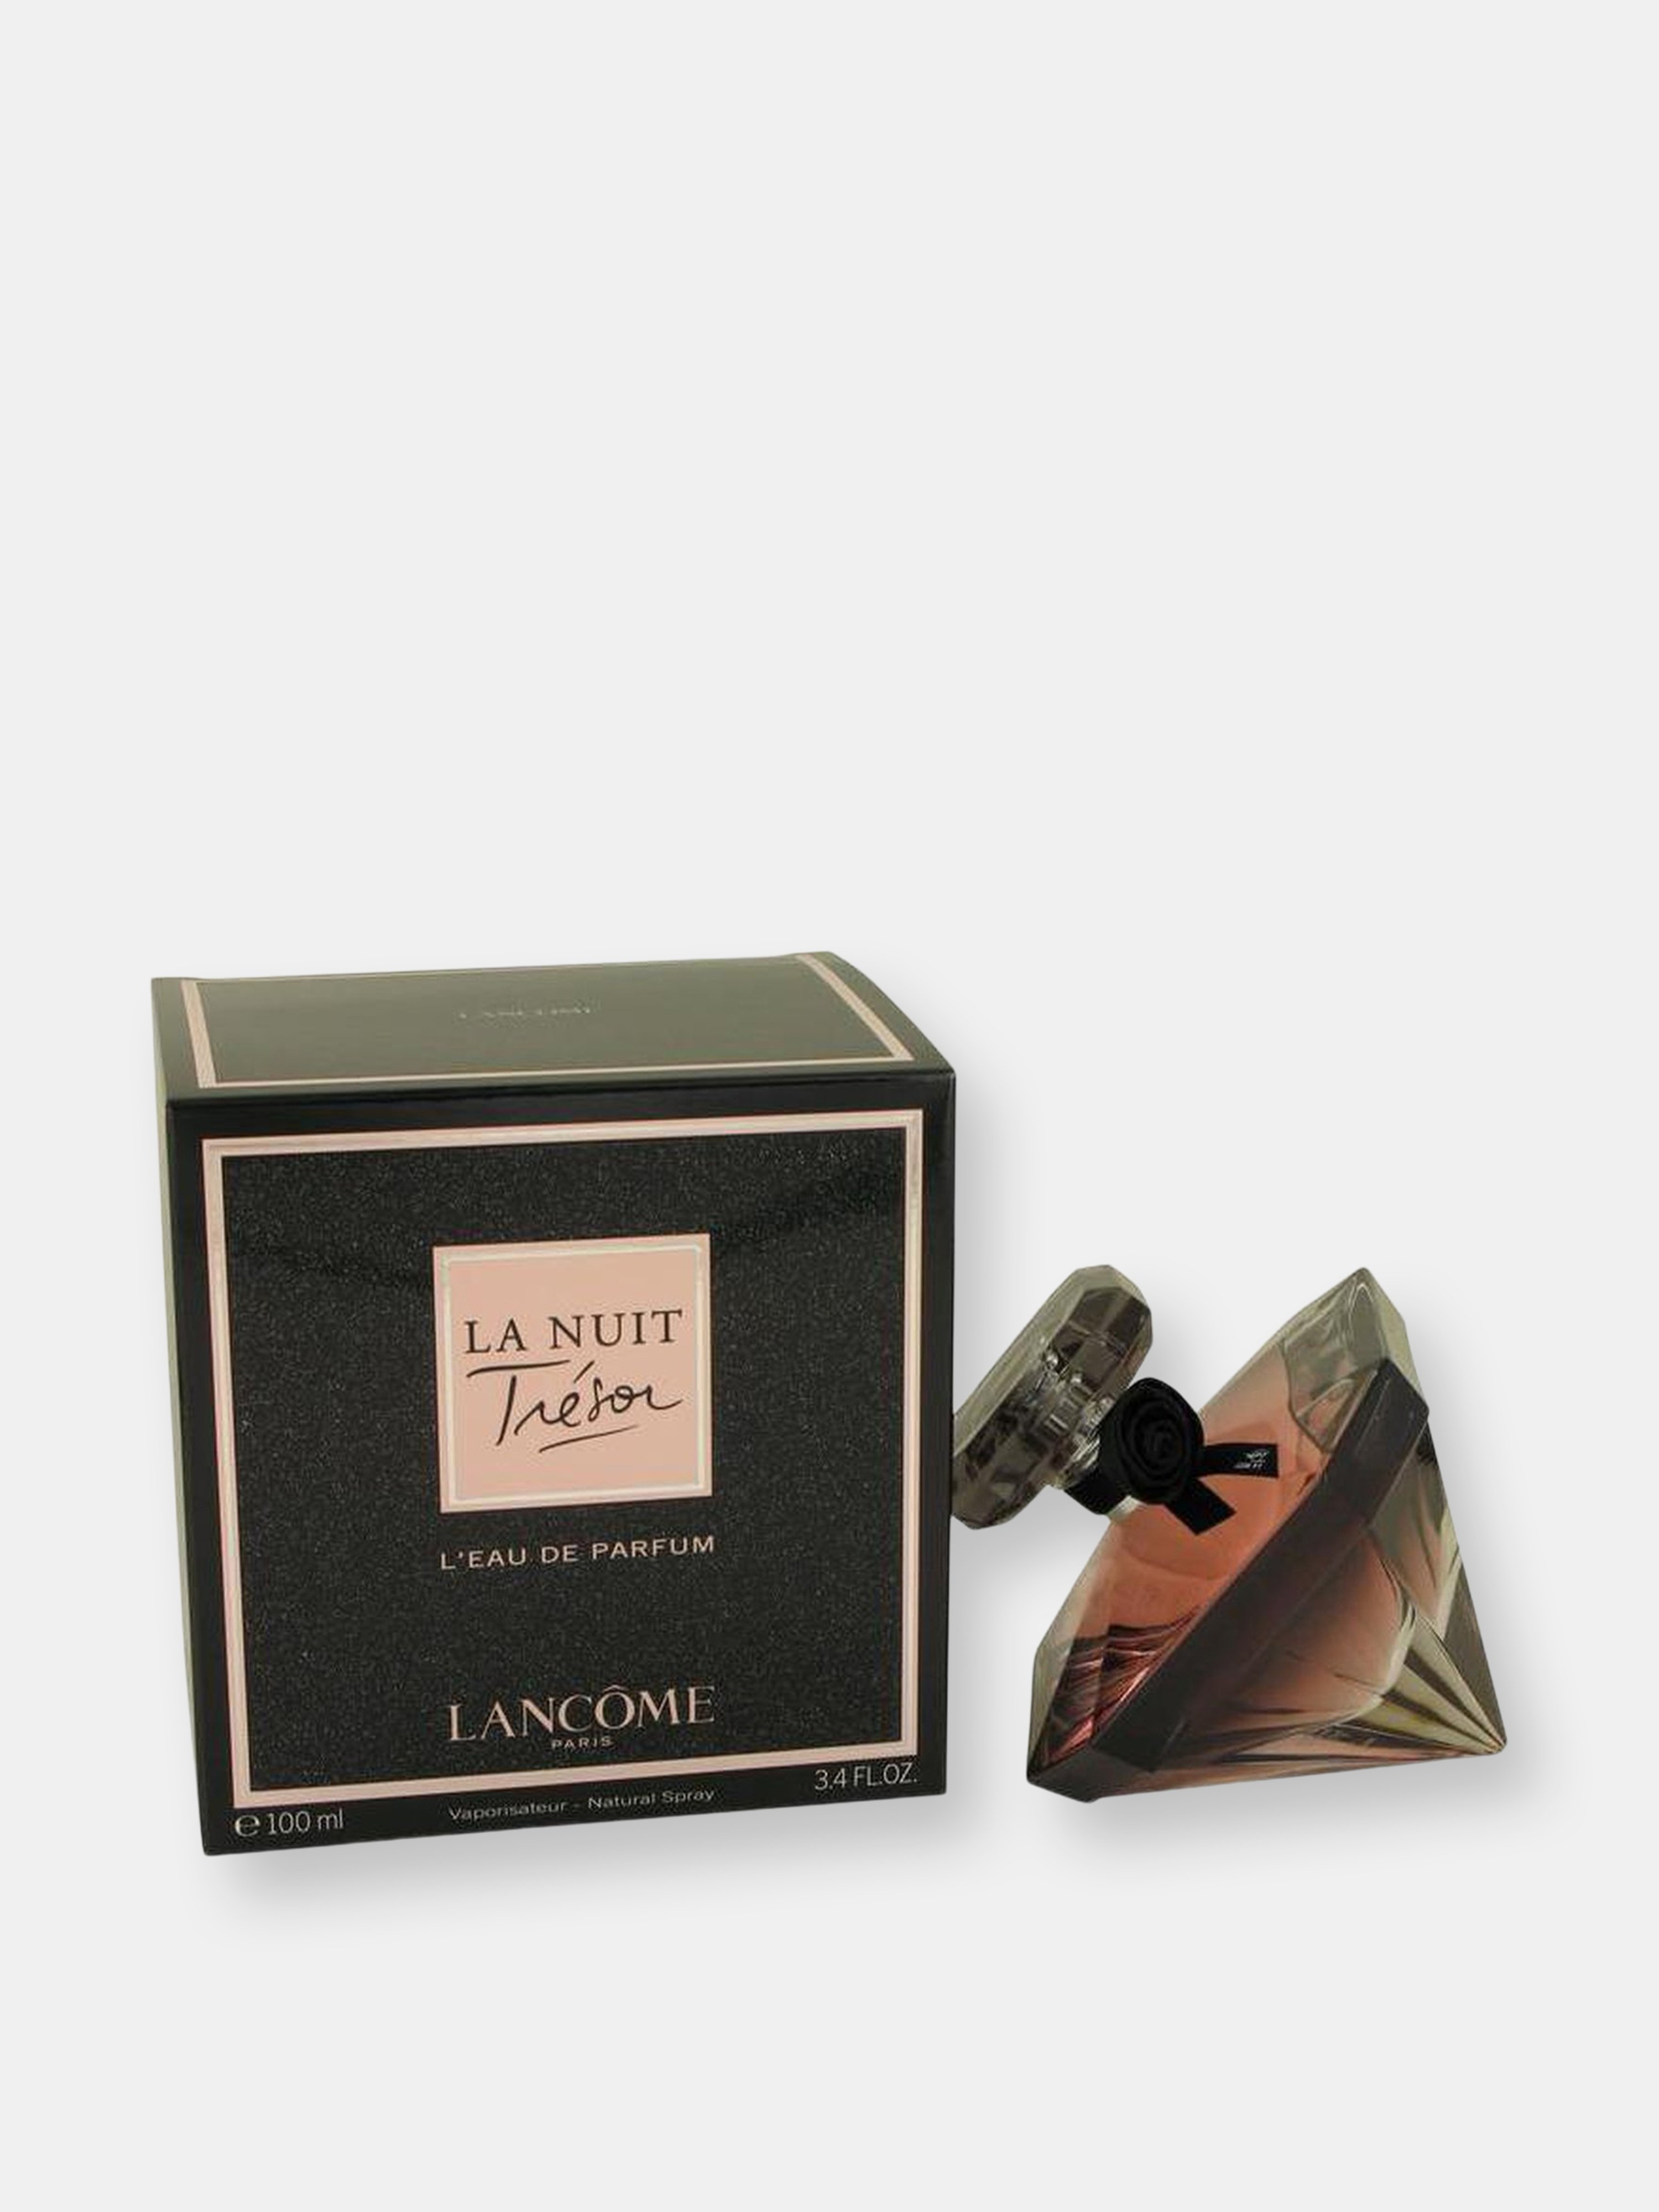 Lancôme Lancome La Nuit Tresor By Lancome L'eau De Parfum Spray 3.4 oz